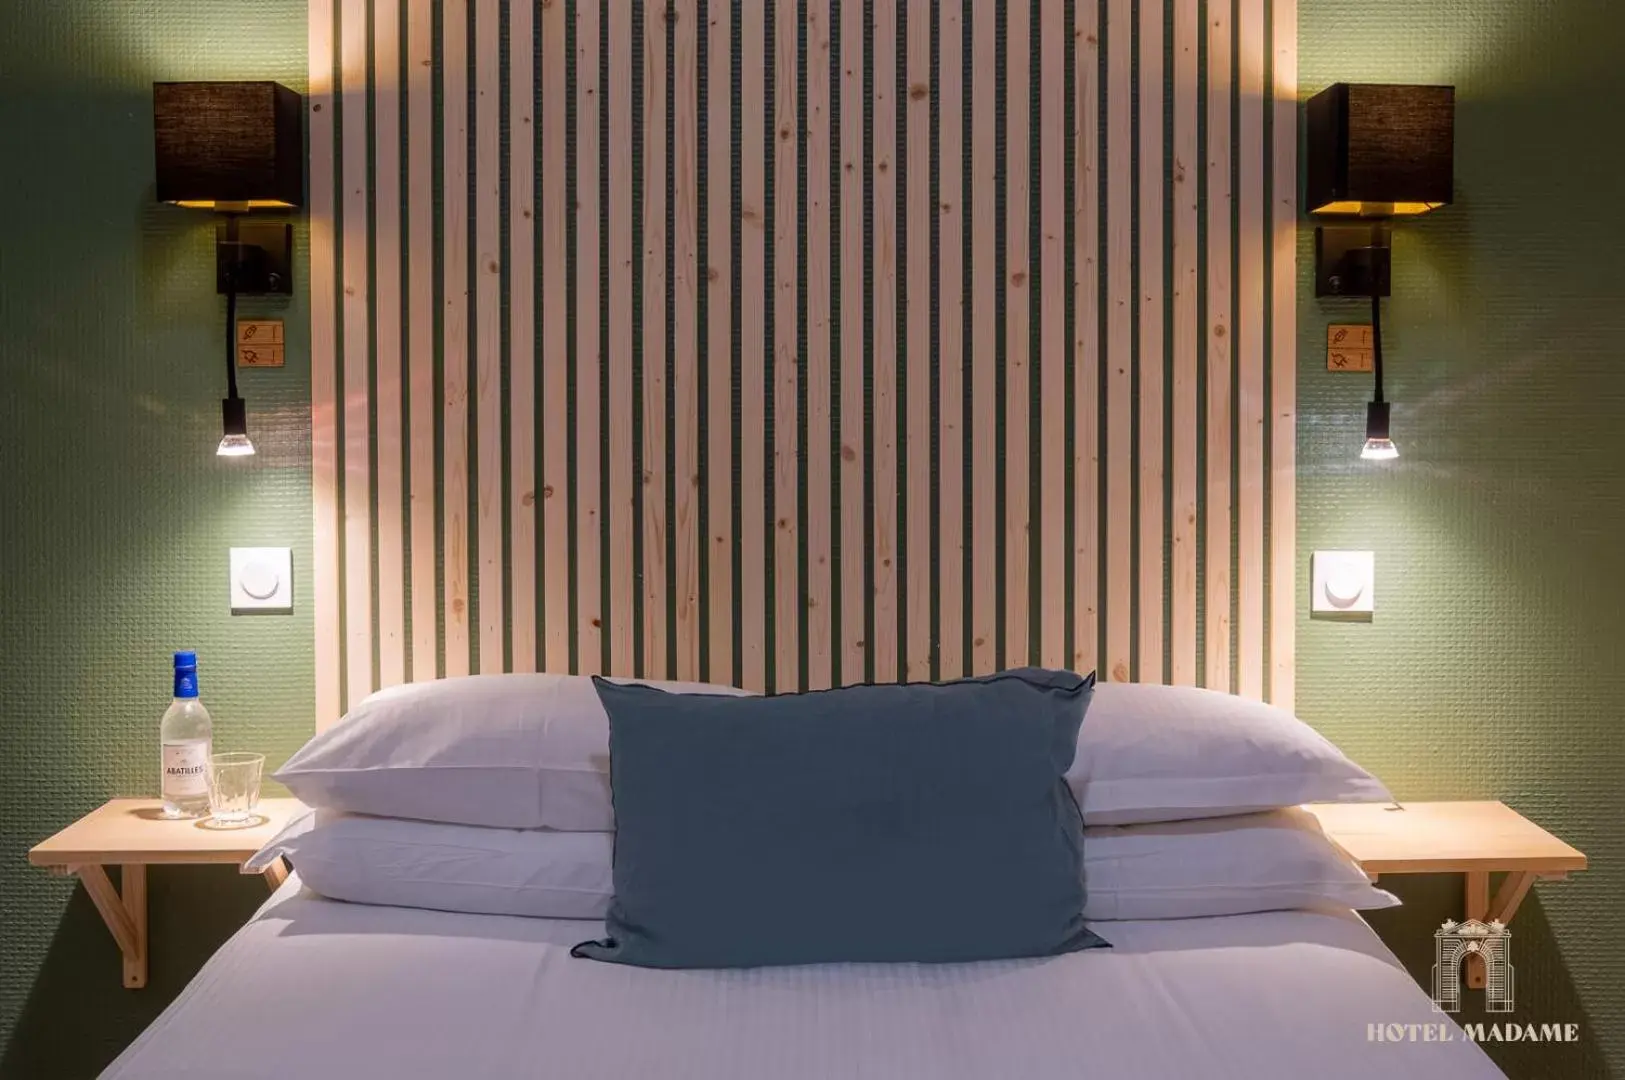 Bed in Hôtel Madame